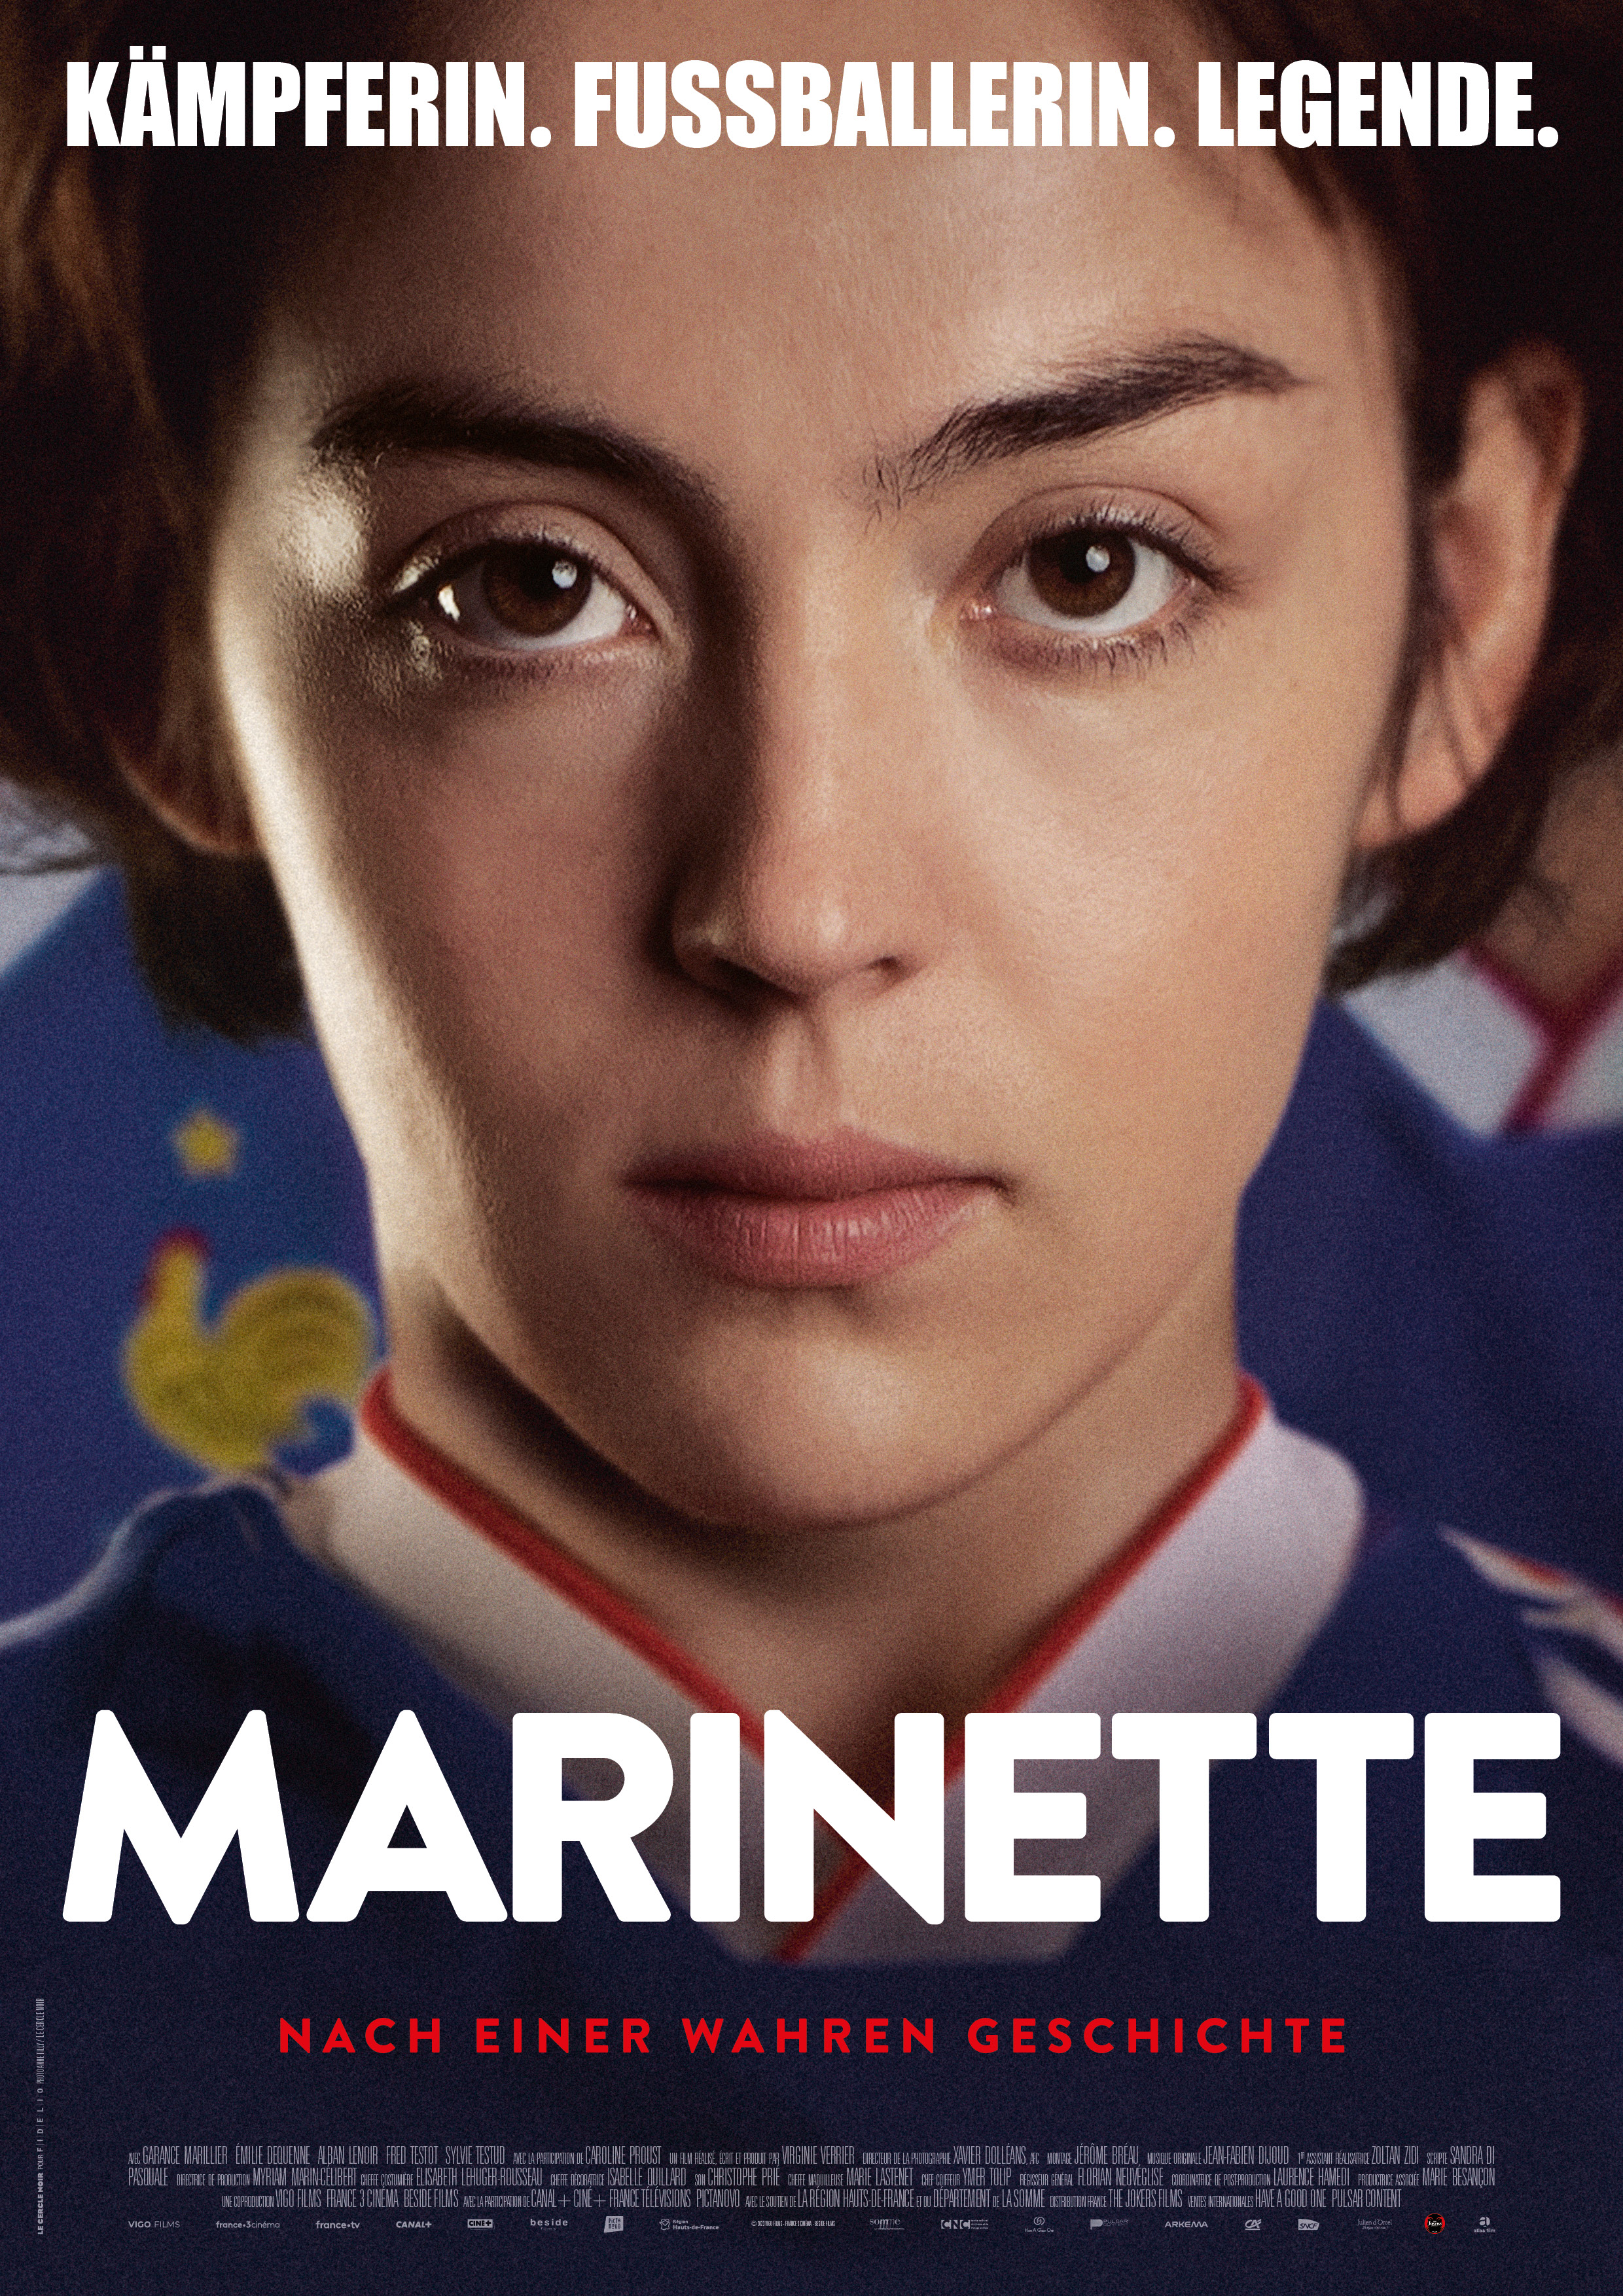 Marinette - Kämpferin. Fußballerin. Legende. - Ein Film von Virginie Verrier